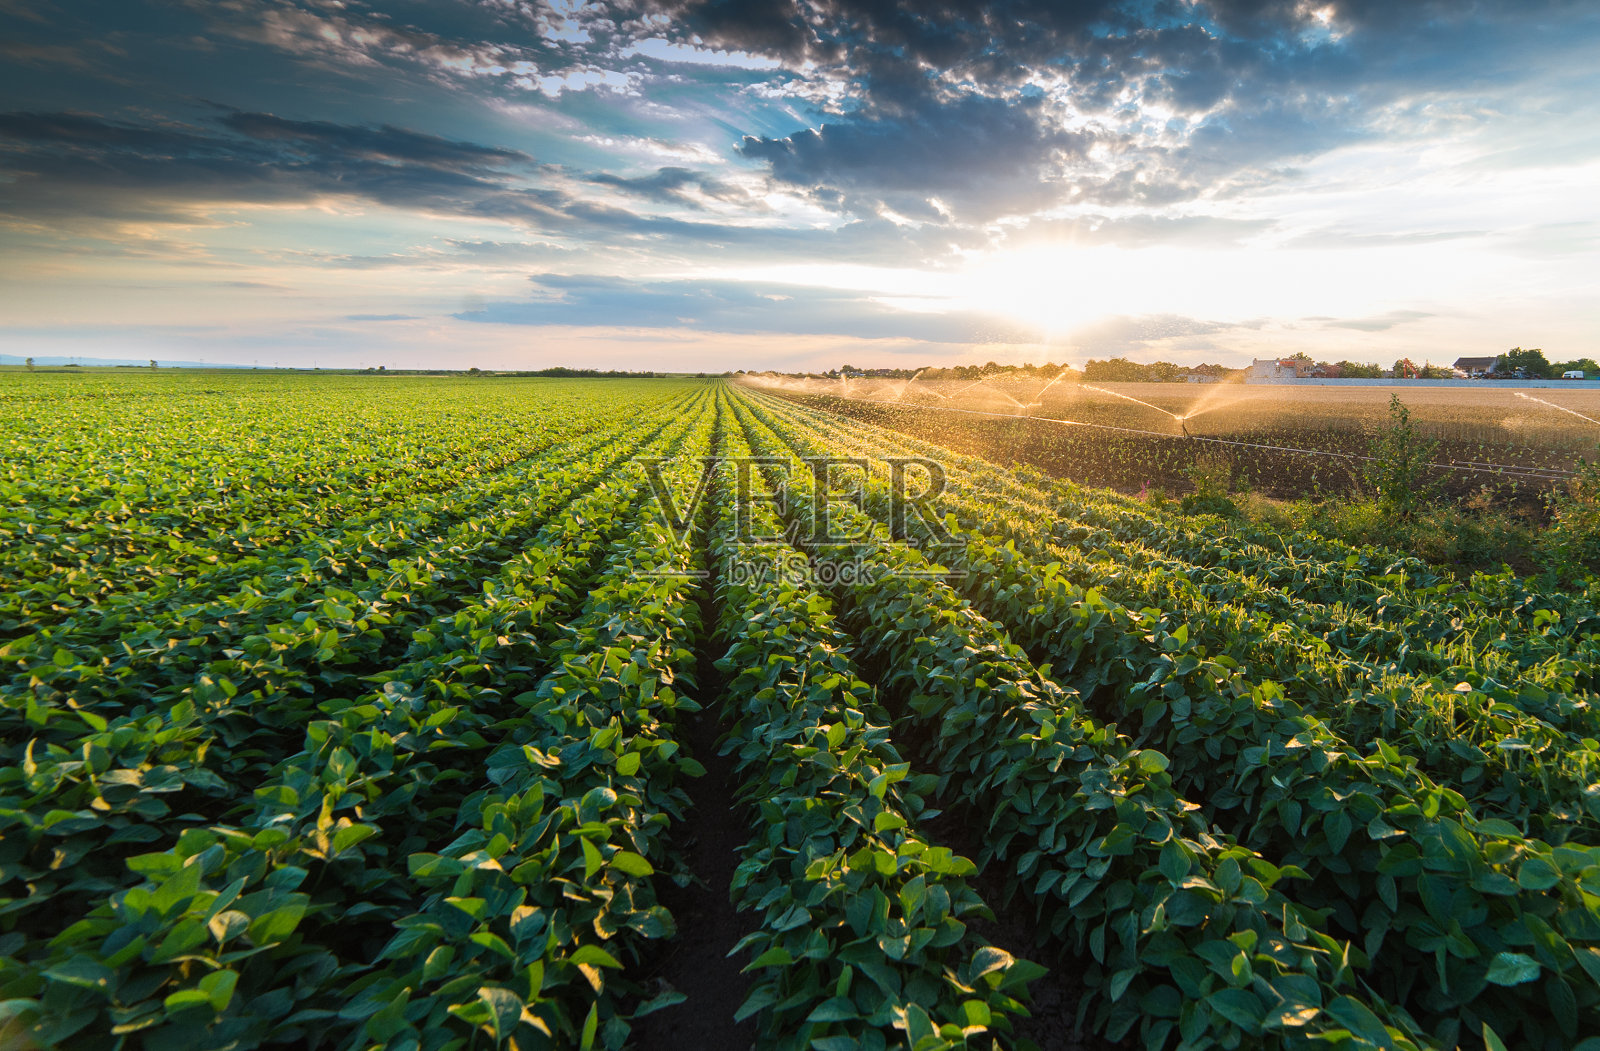 灌溉系统在田间灌溉大豆作物照片摄影图片